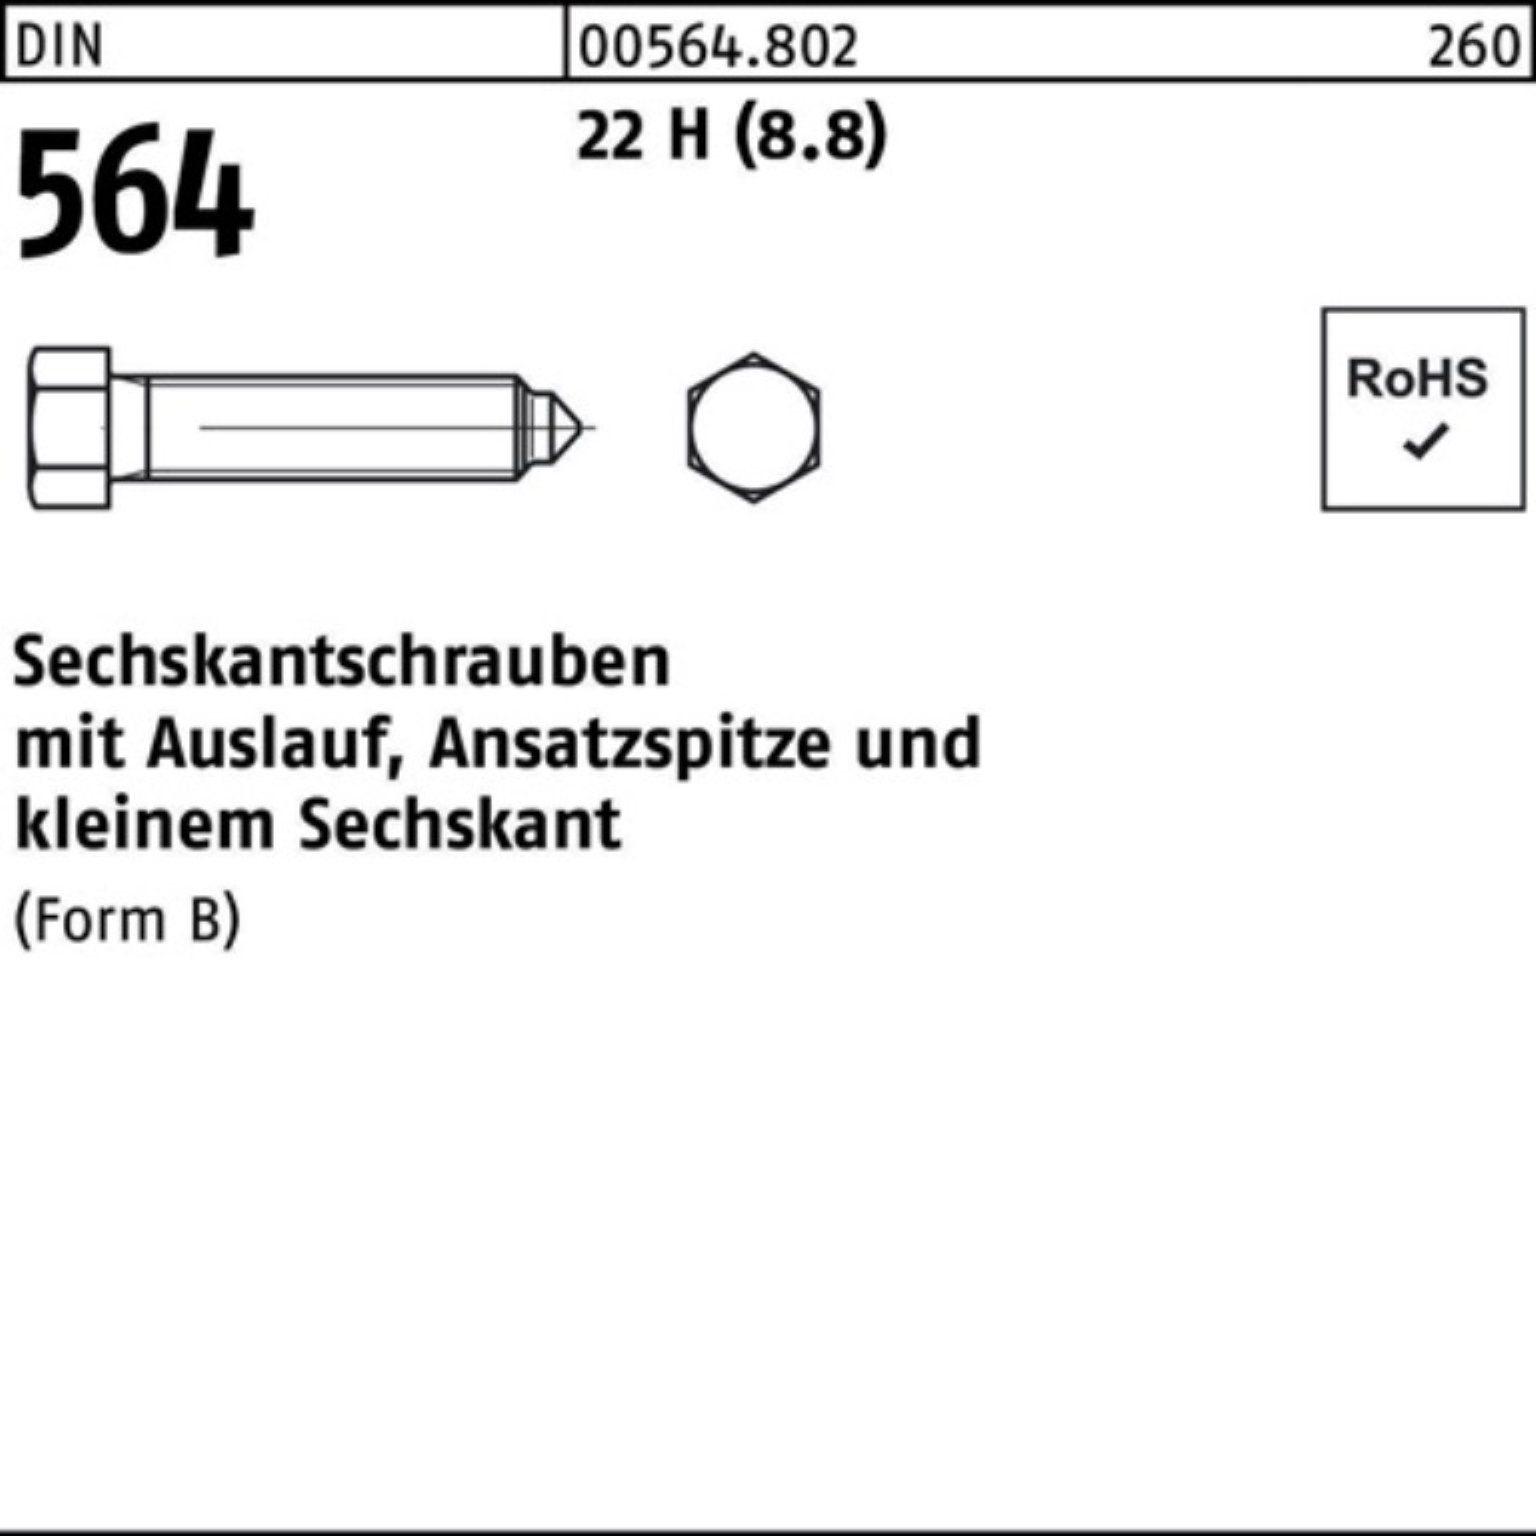 Reyher Sechskantschraube 100er Pack Sechskantschraube DIN 564 Ansatzspitze/Auslauf BM 16x 50 22